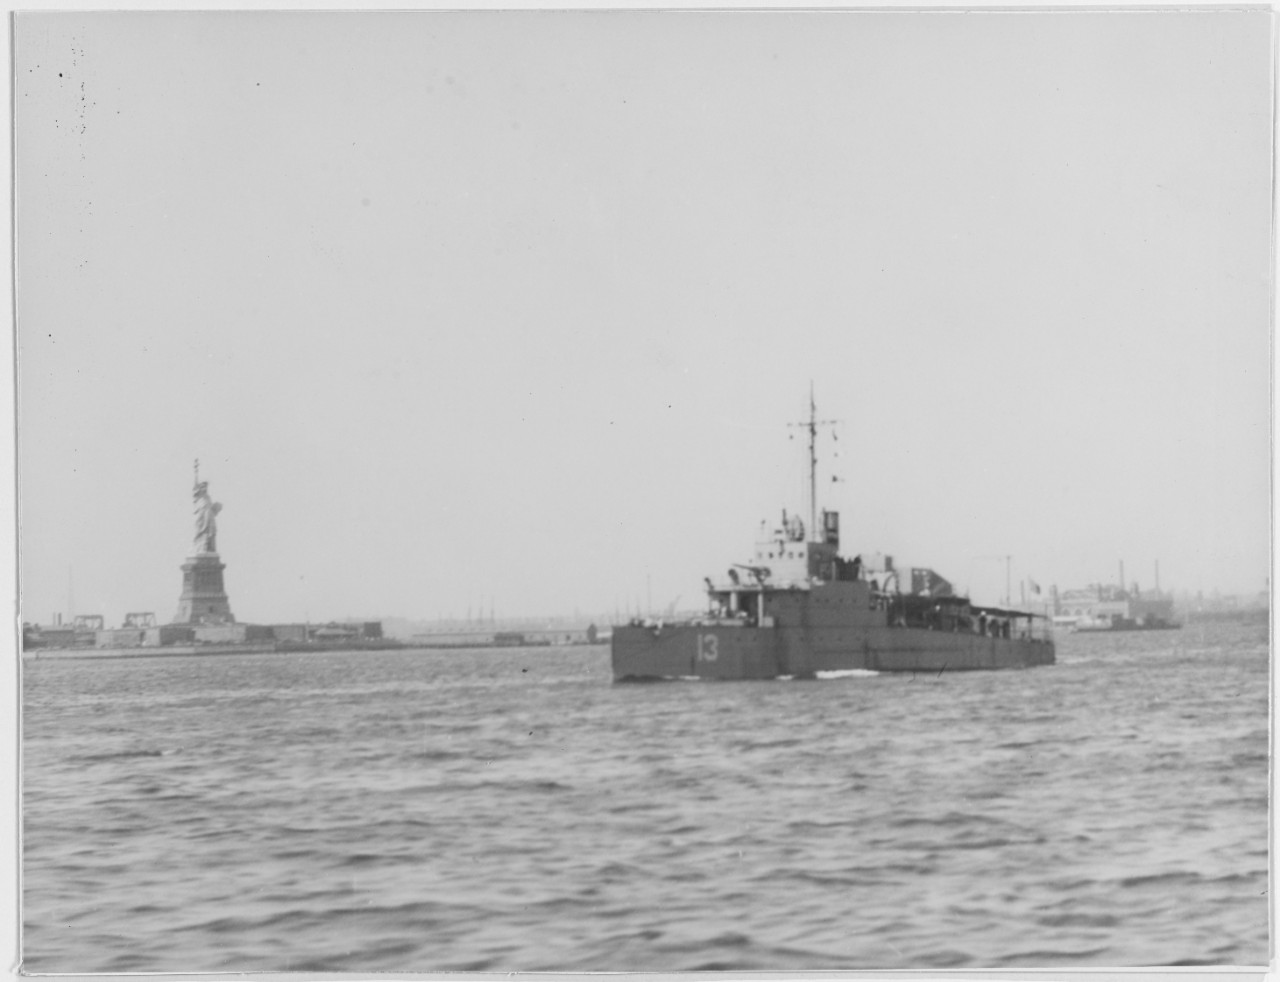 USS EAGLE 13 (PE-13)